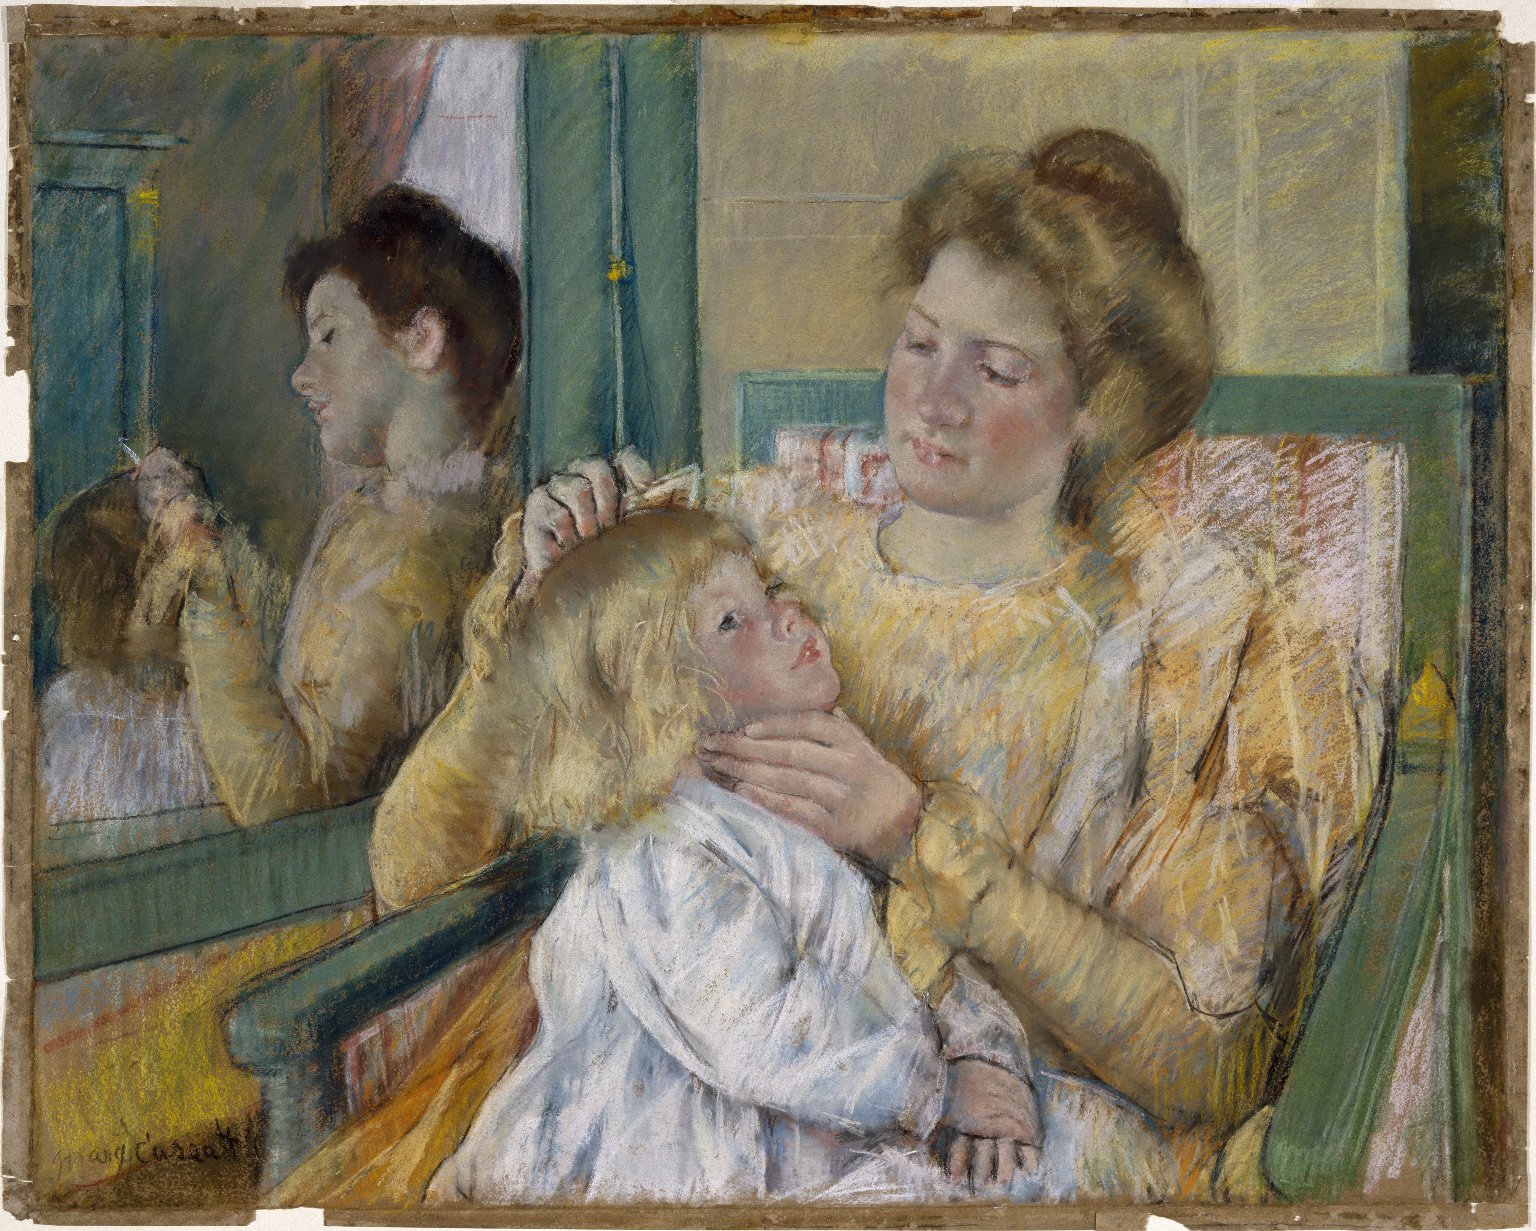 Madre che pettina i capelli di sua figlia by Mary Cassatt - 1901 - 64.1 x 80.3 cm 